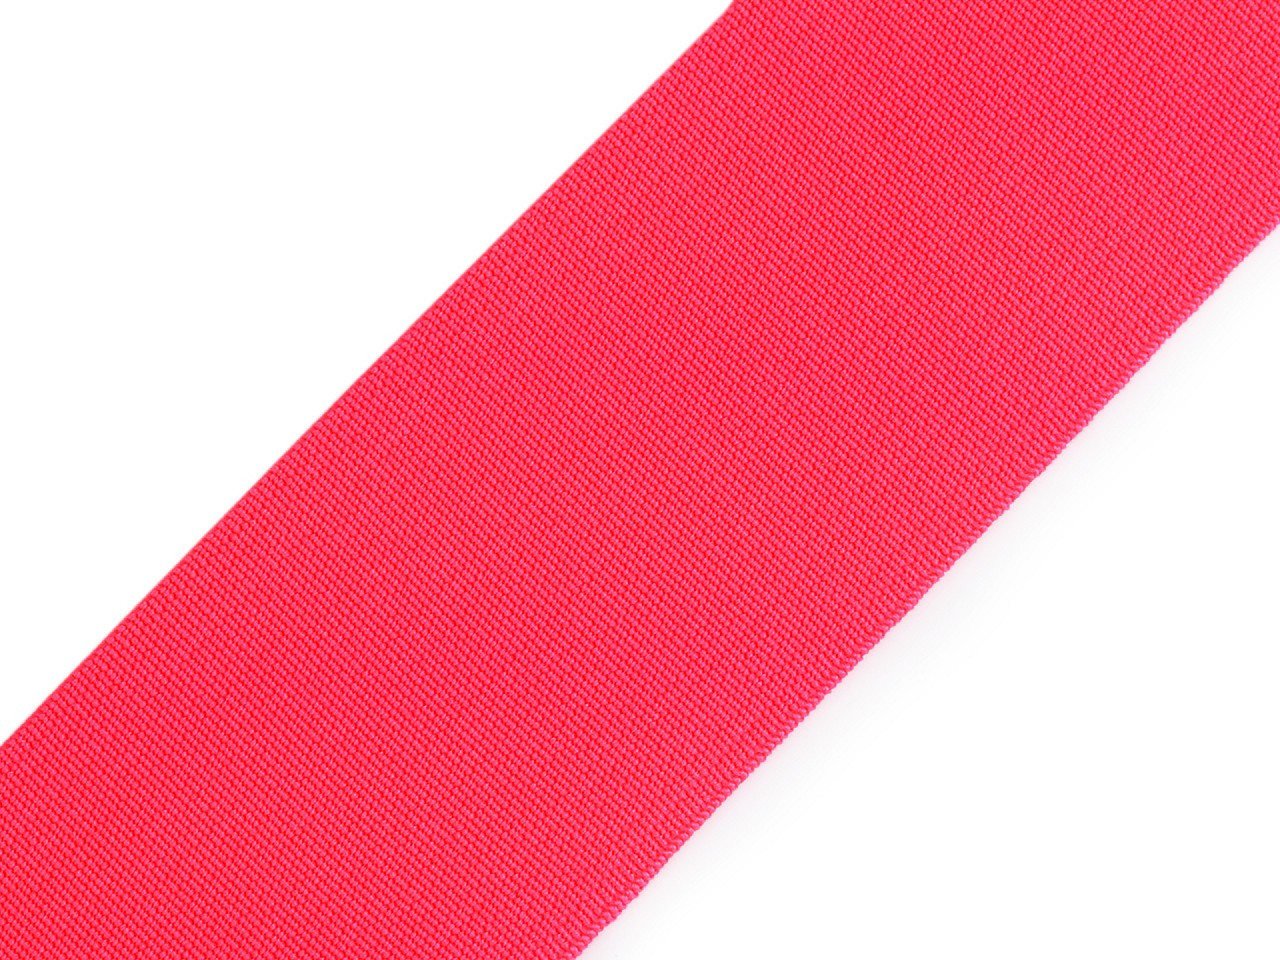 Pruženka hladká šíře 50 mm tkaná barevná, barva 1410 růžová neon